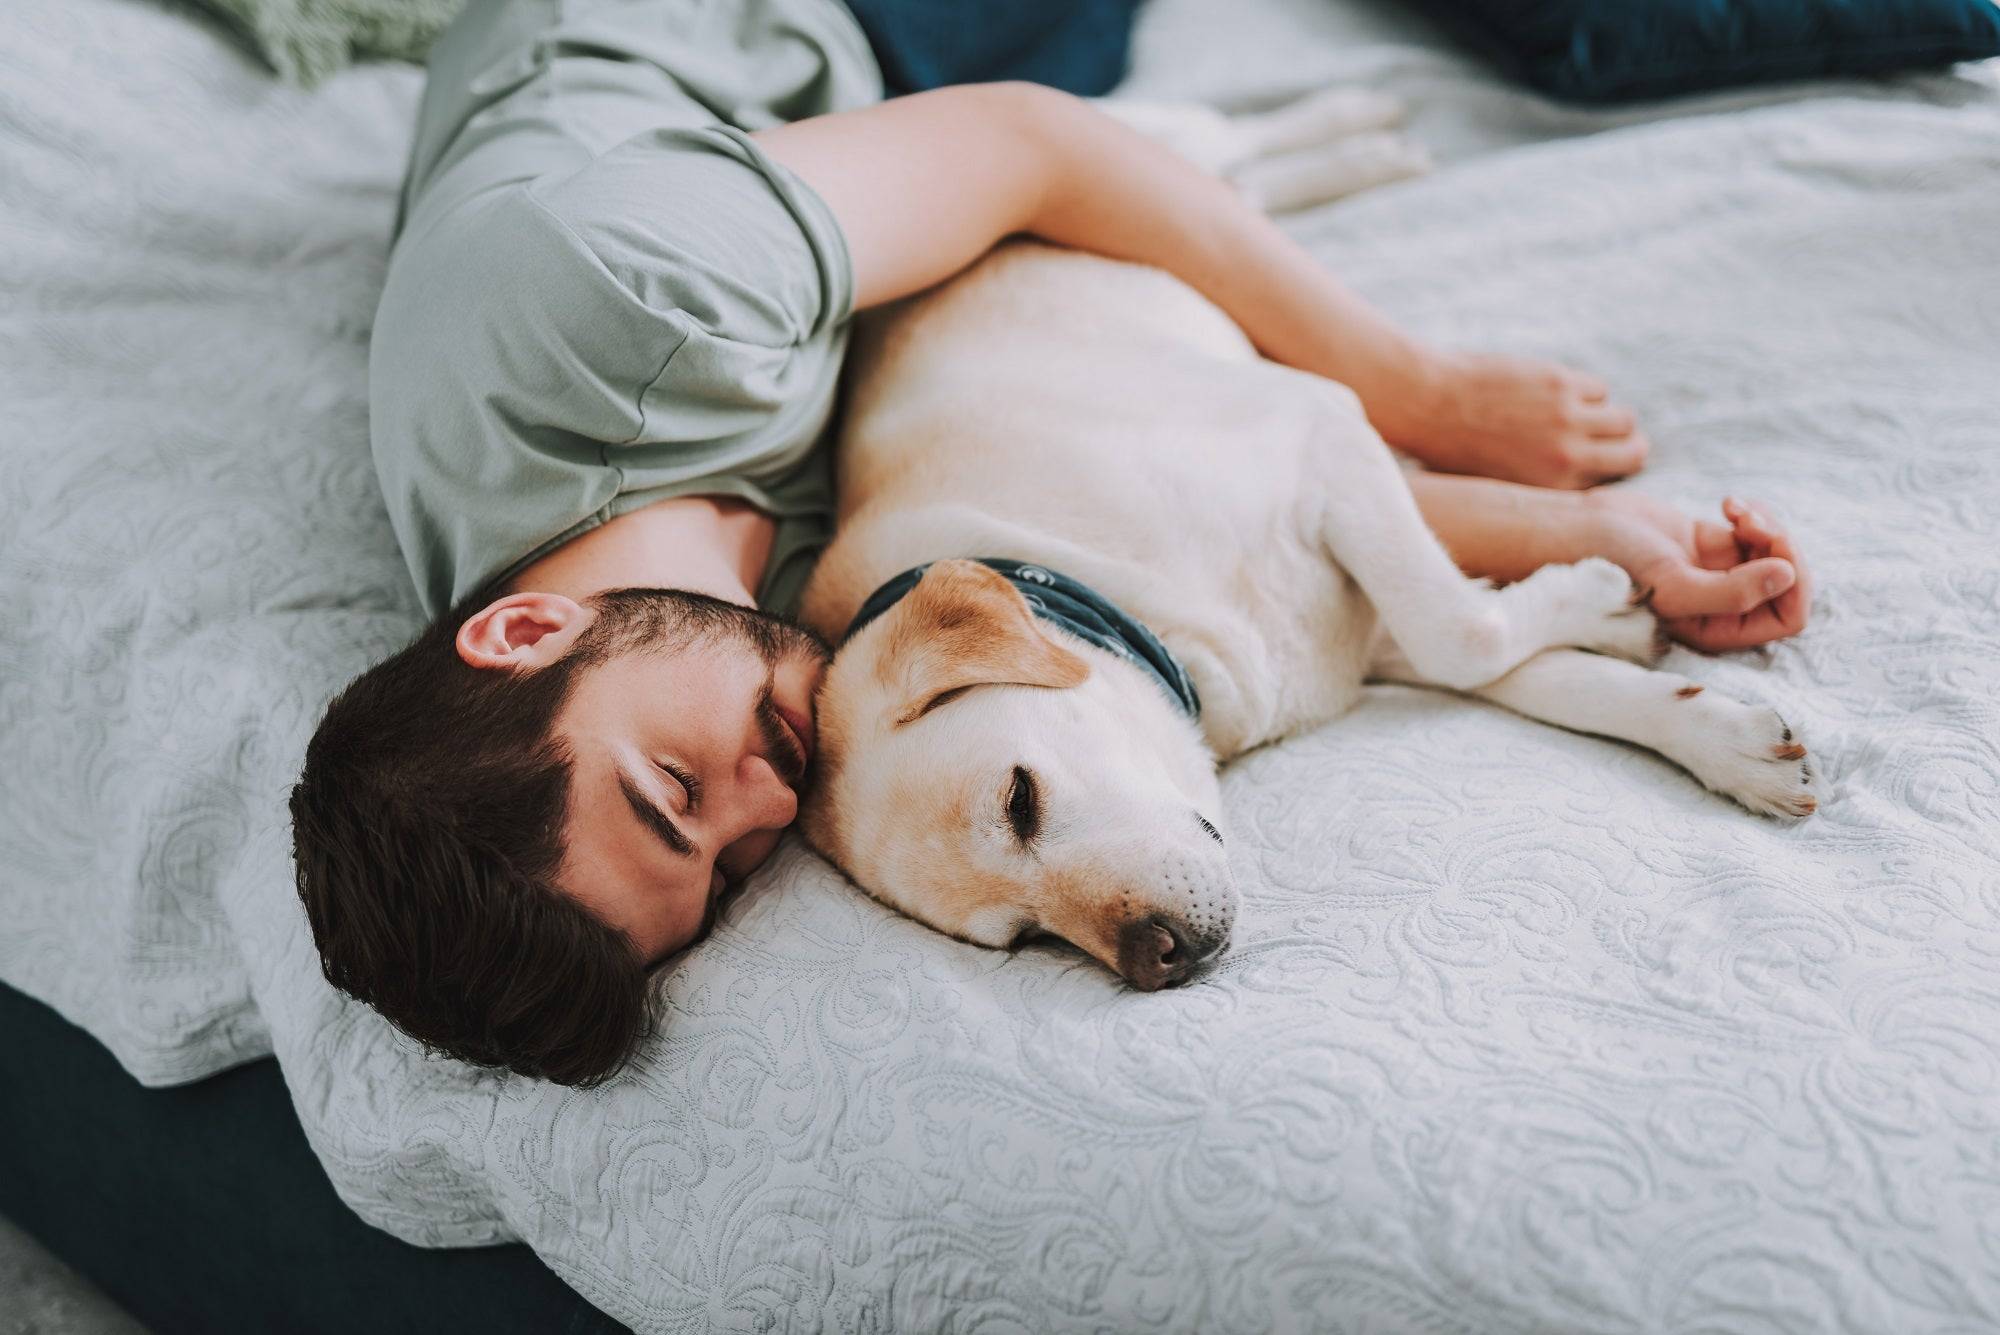 Мужчина на кровати с собакой. Парень с собакой в постели.